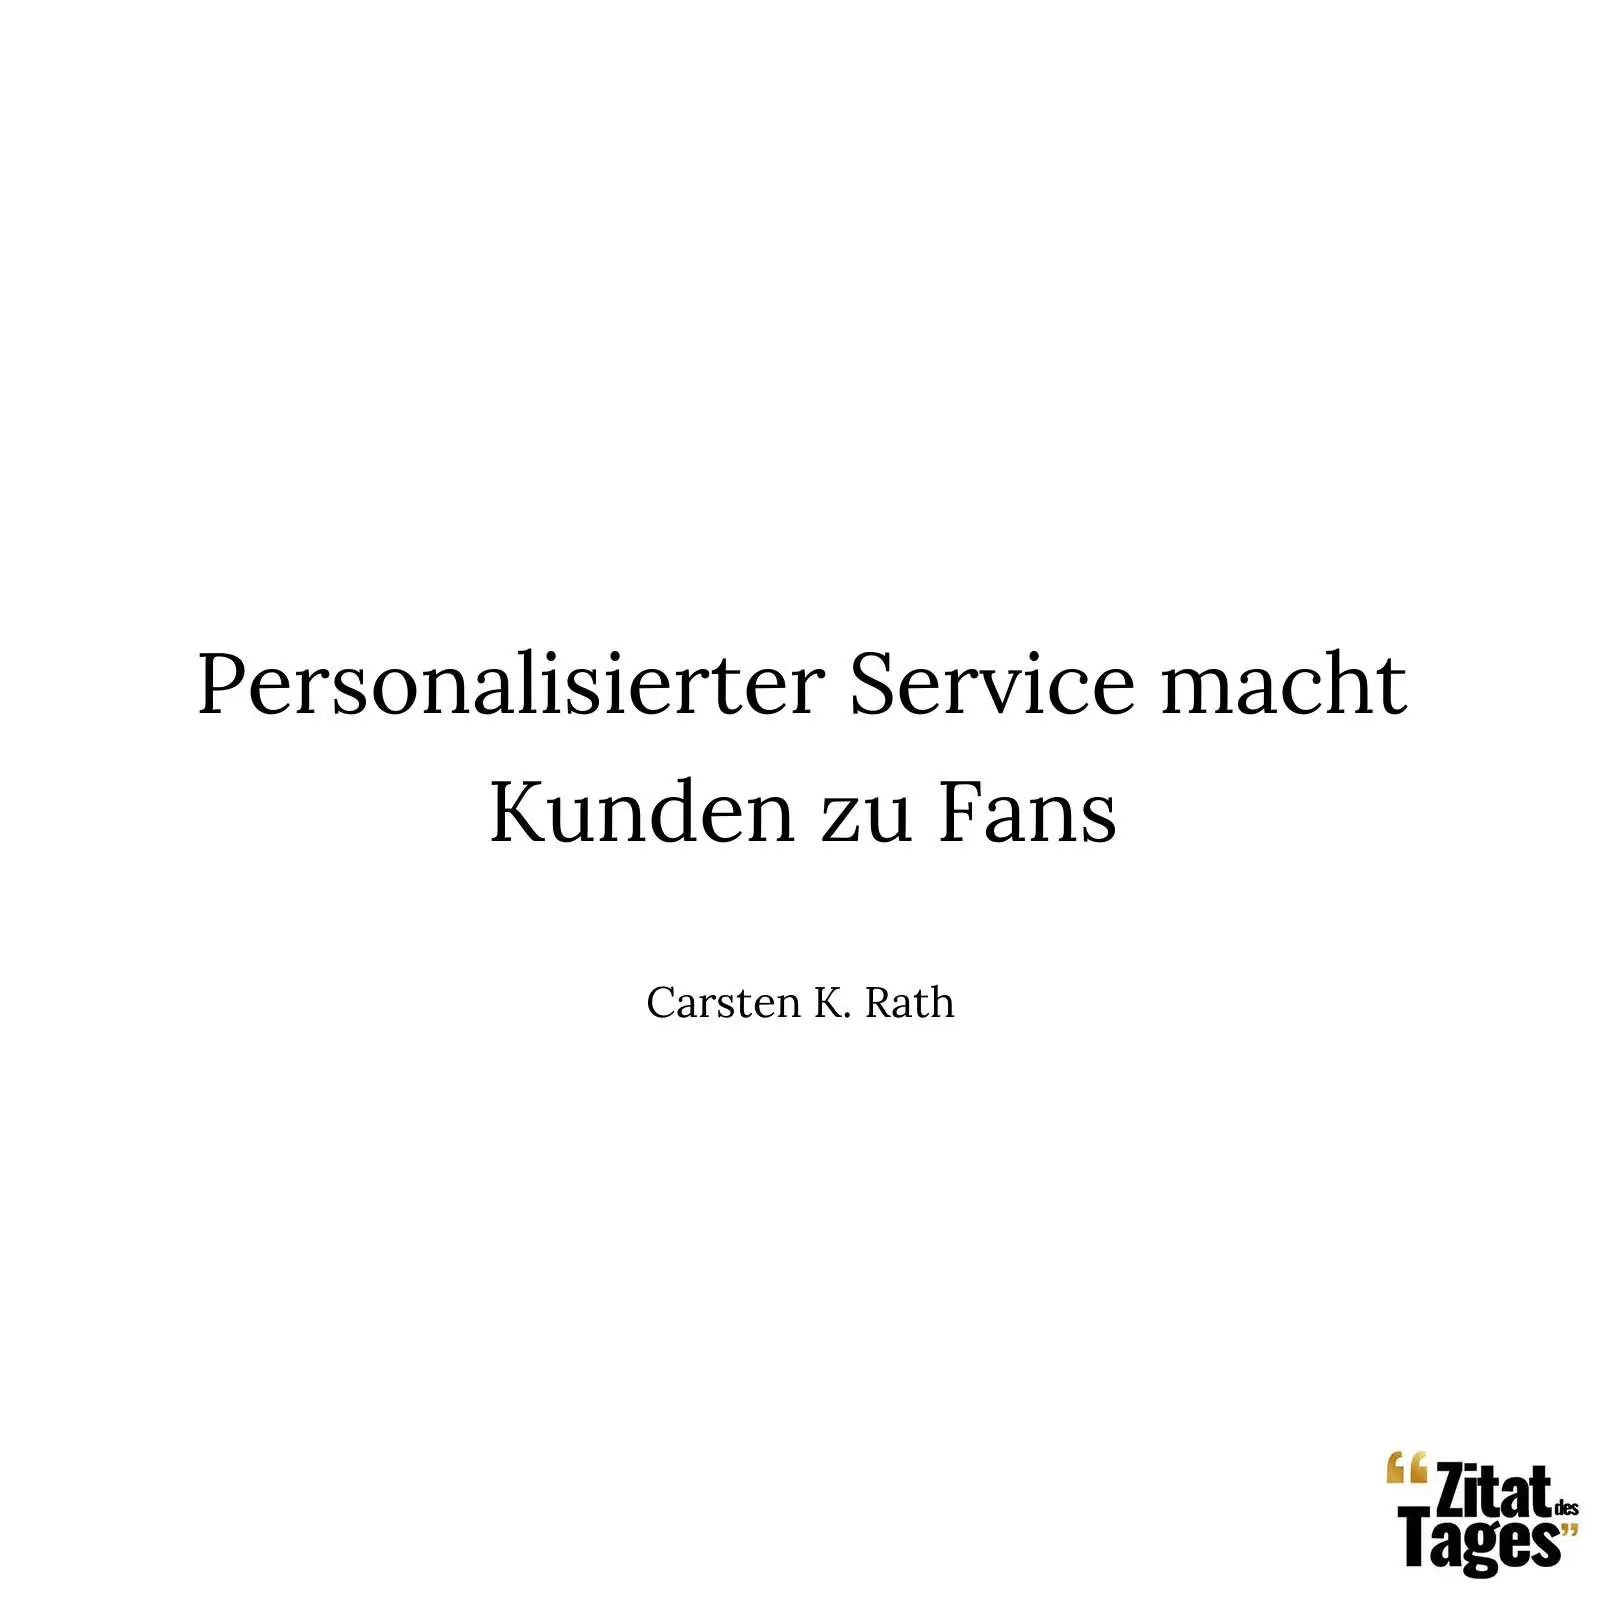 Personalisierter Service macht Kunden zu Fans - Carsten K. Rath